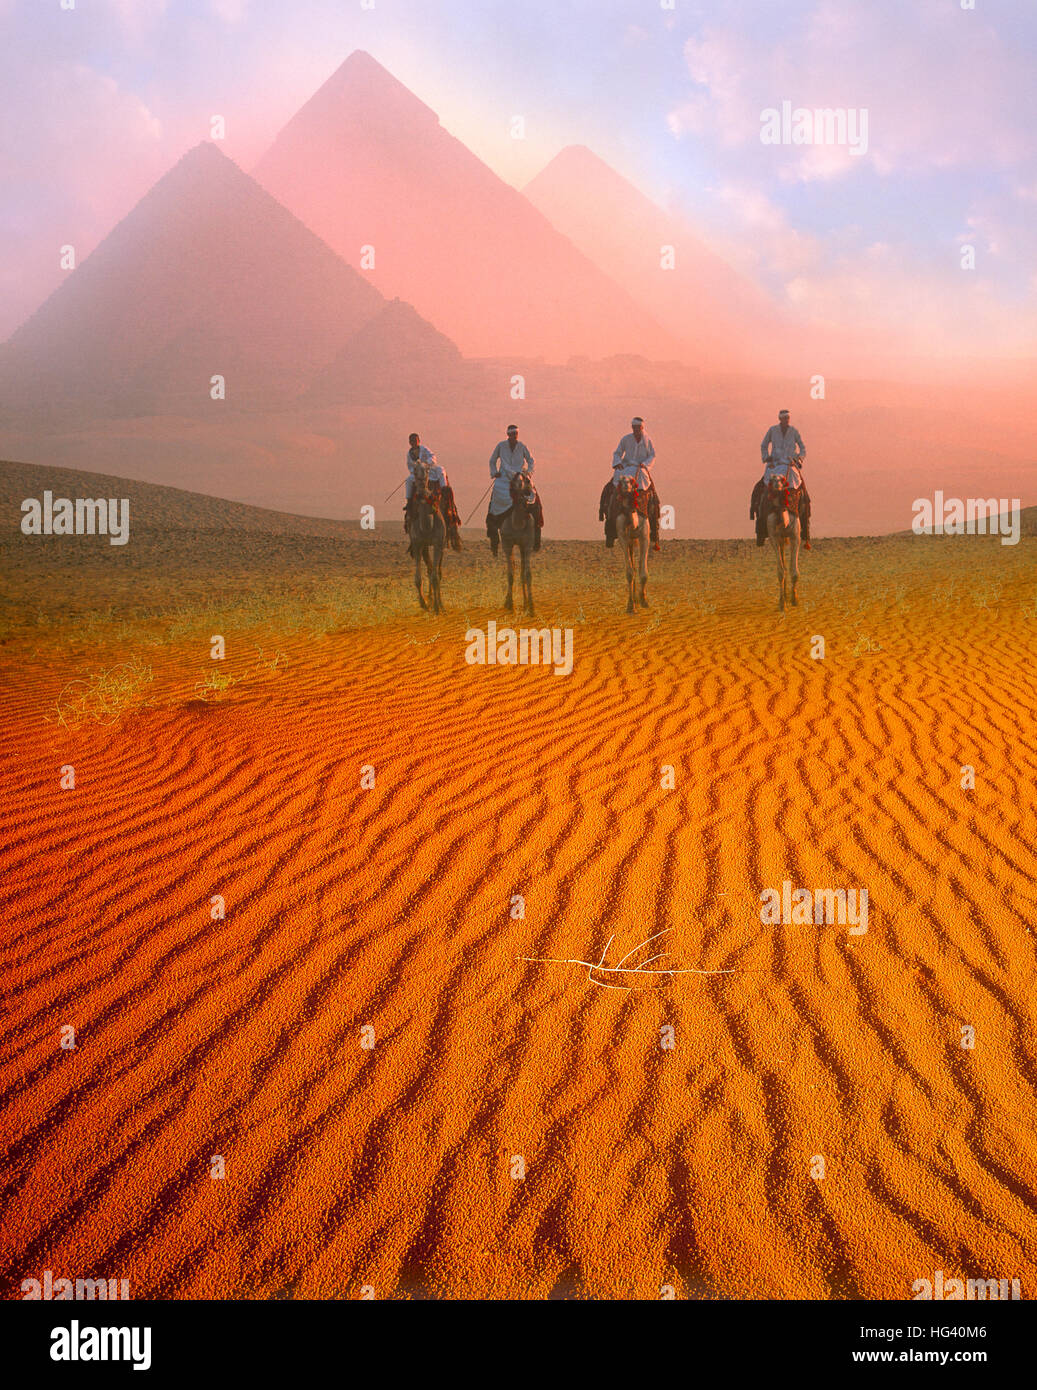 Pirámides y cuatro jinetes de camellos al amanecer, en Giza, Cairo, Egipto Foto de stock